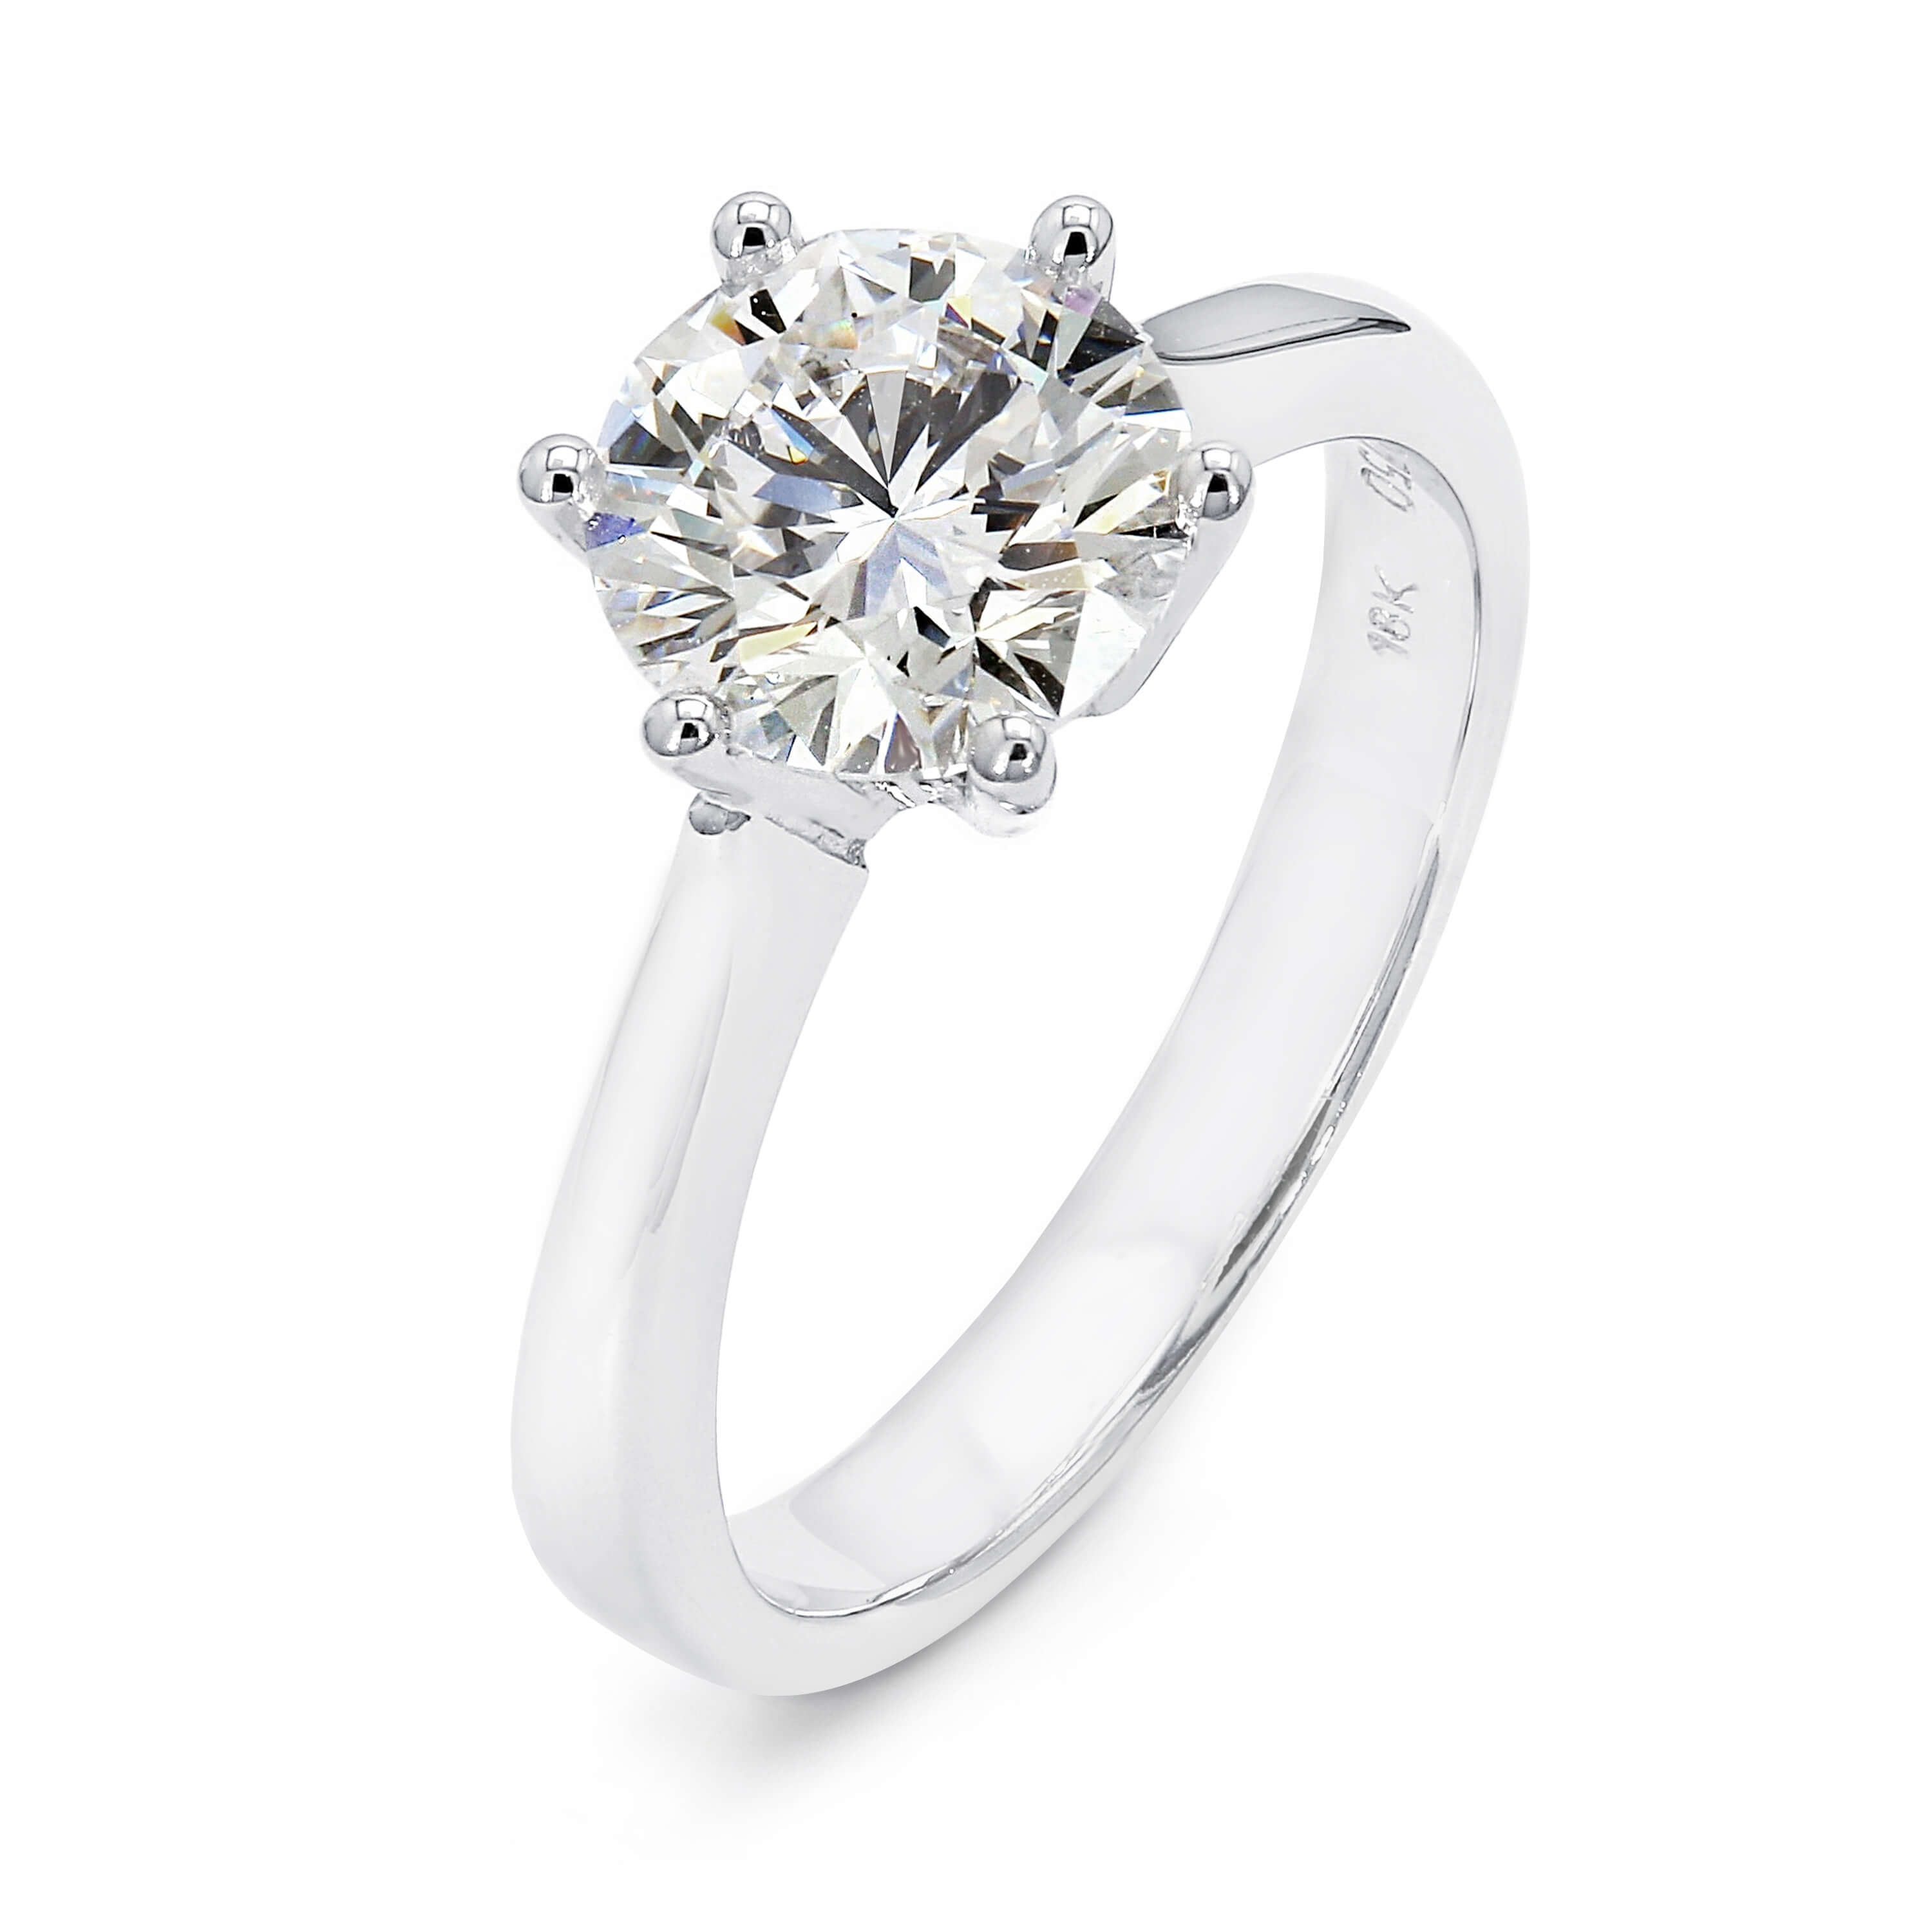 1 56 Carat Solitaire Diamond Engagement Ring In 18k White Gold E Vs1 Shimansky New York